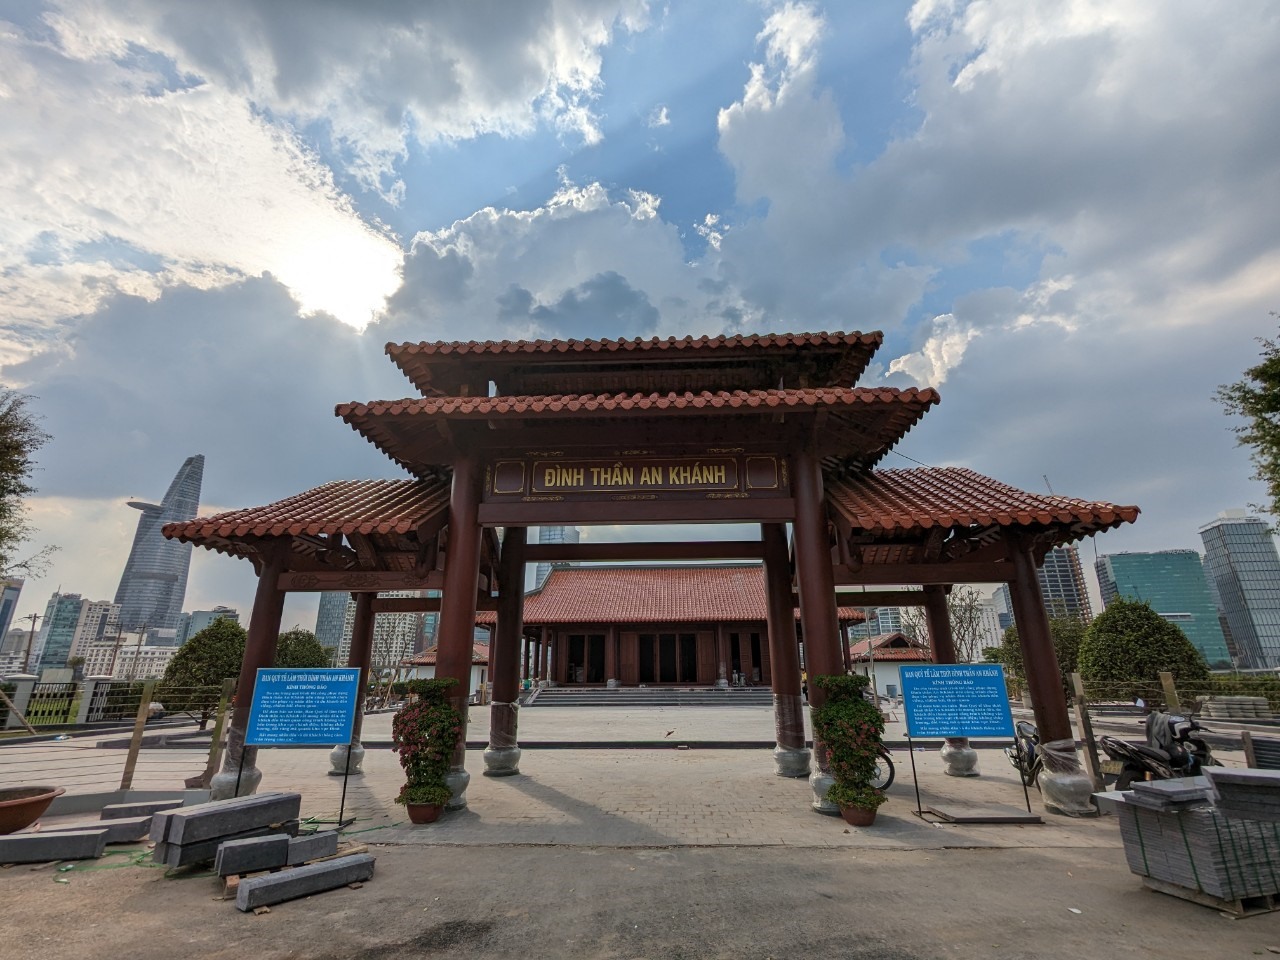 Theo đó, Đình An Khánh được phục dựng với diện tích đình chính 381,43 m2; diện tích khối phụ trợ 200,92 m2; diện tích cây xanh, cảnh quan 684,10 m2.